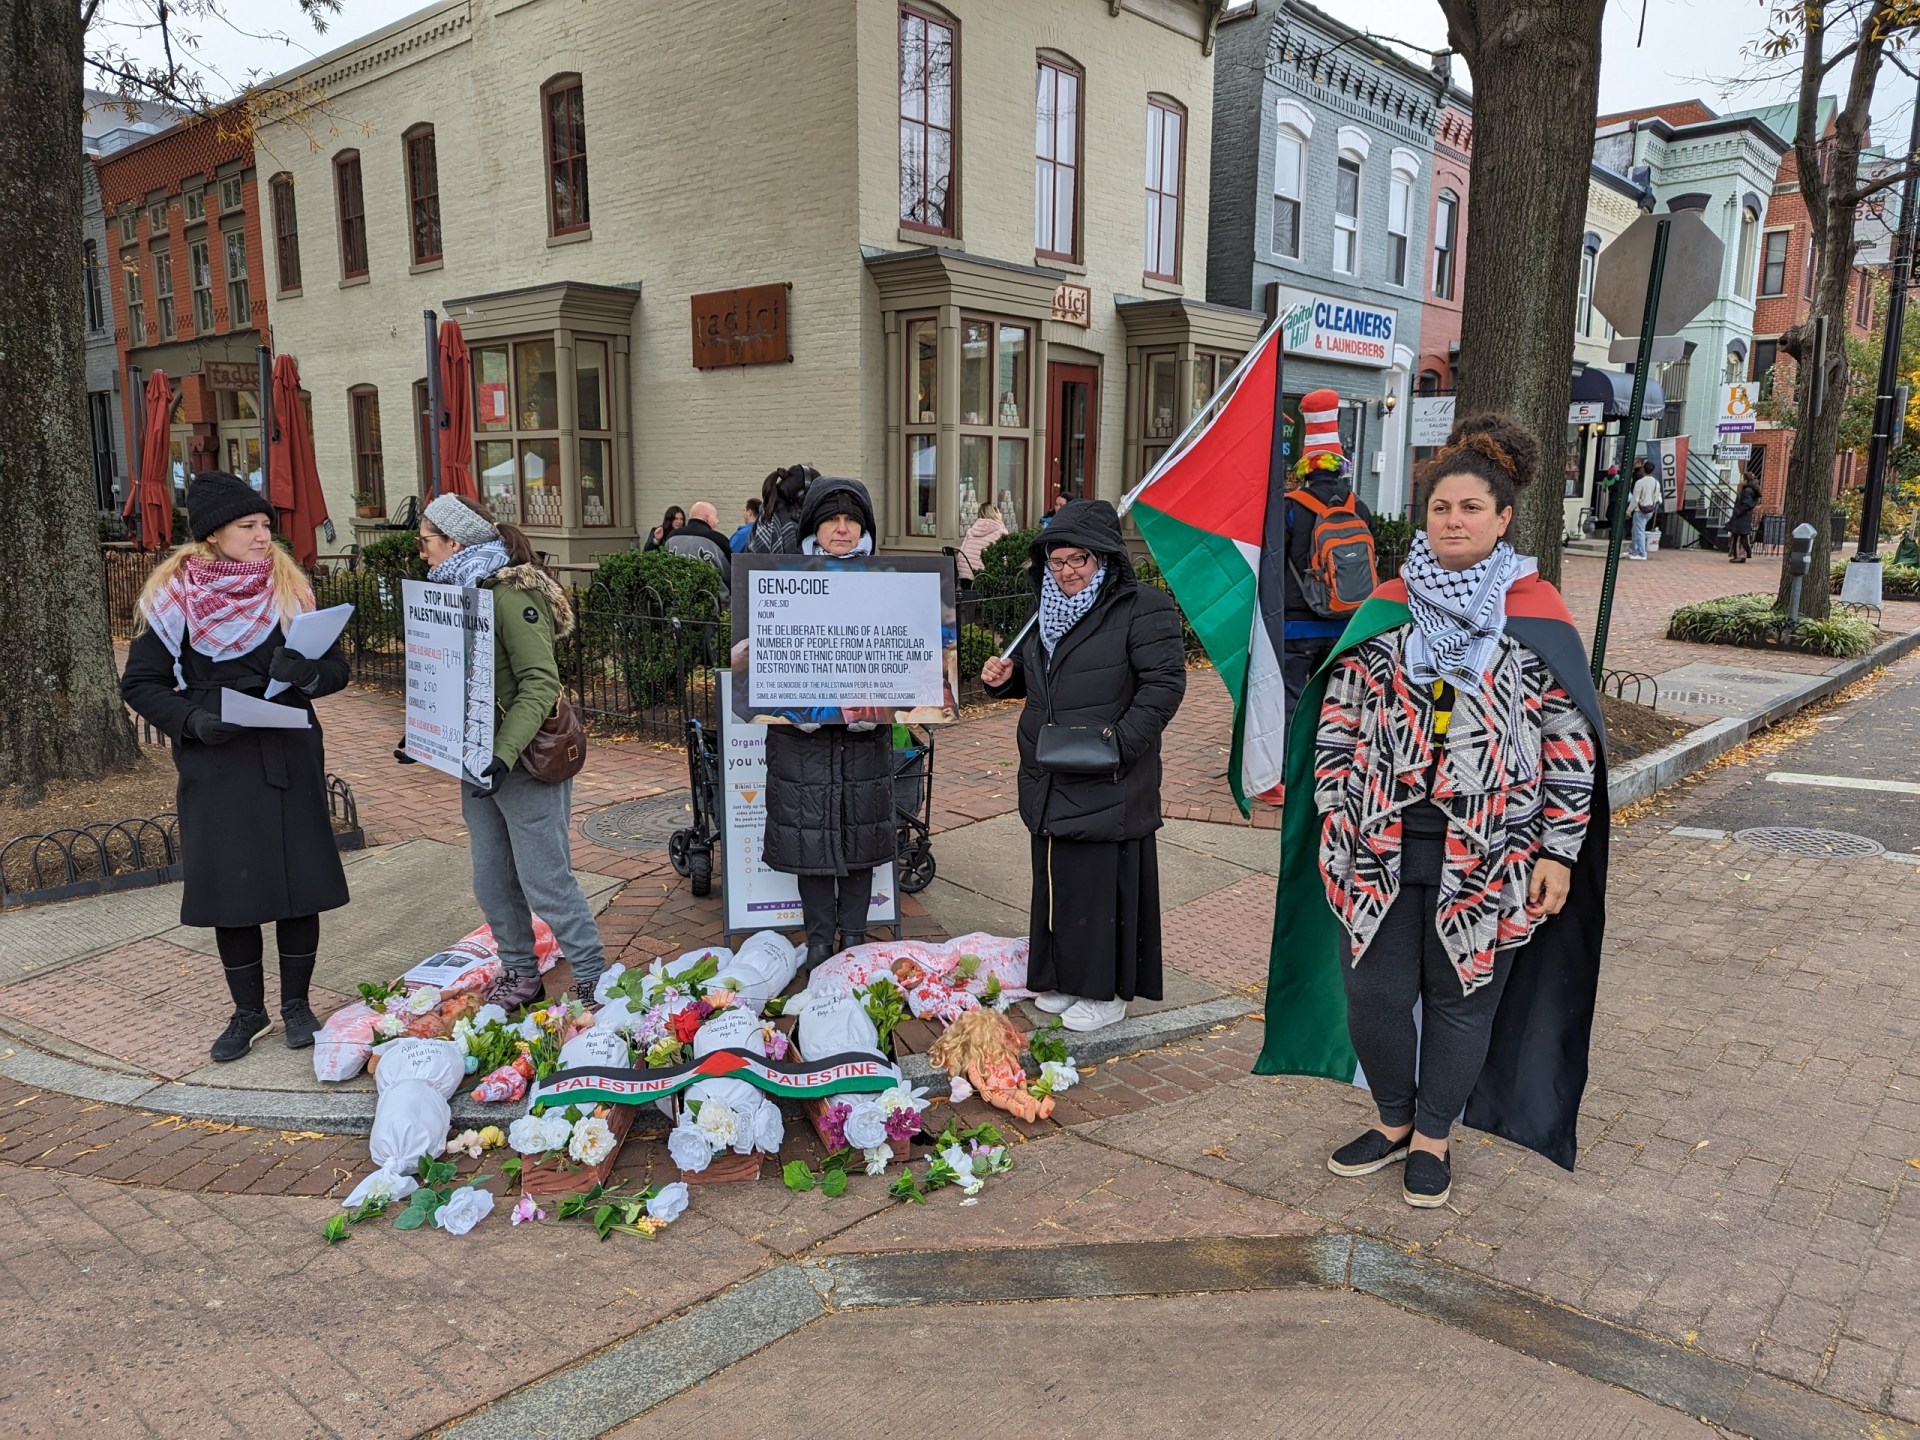 Des groupes organisent des « die-in » à travers Washington, DC, pour sensibiliser l’opinion publique à Gaza |  Conflit israélo-palestinien Actualités